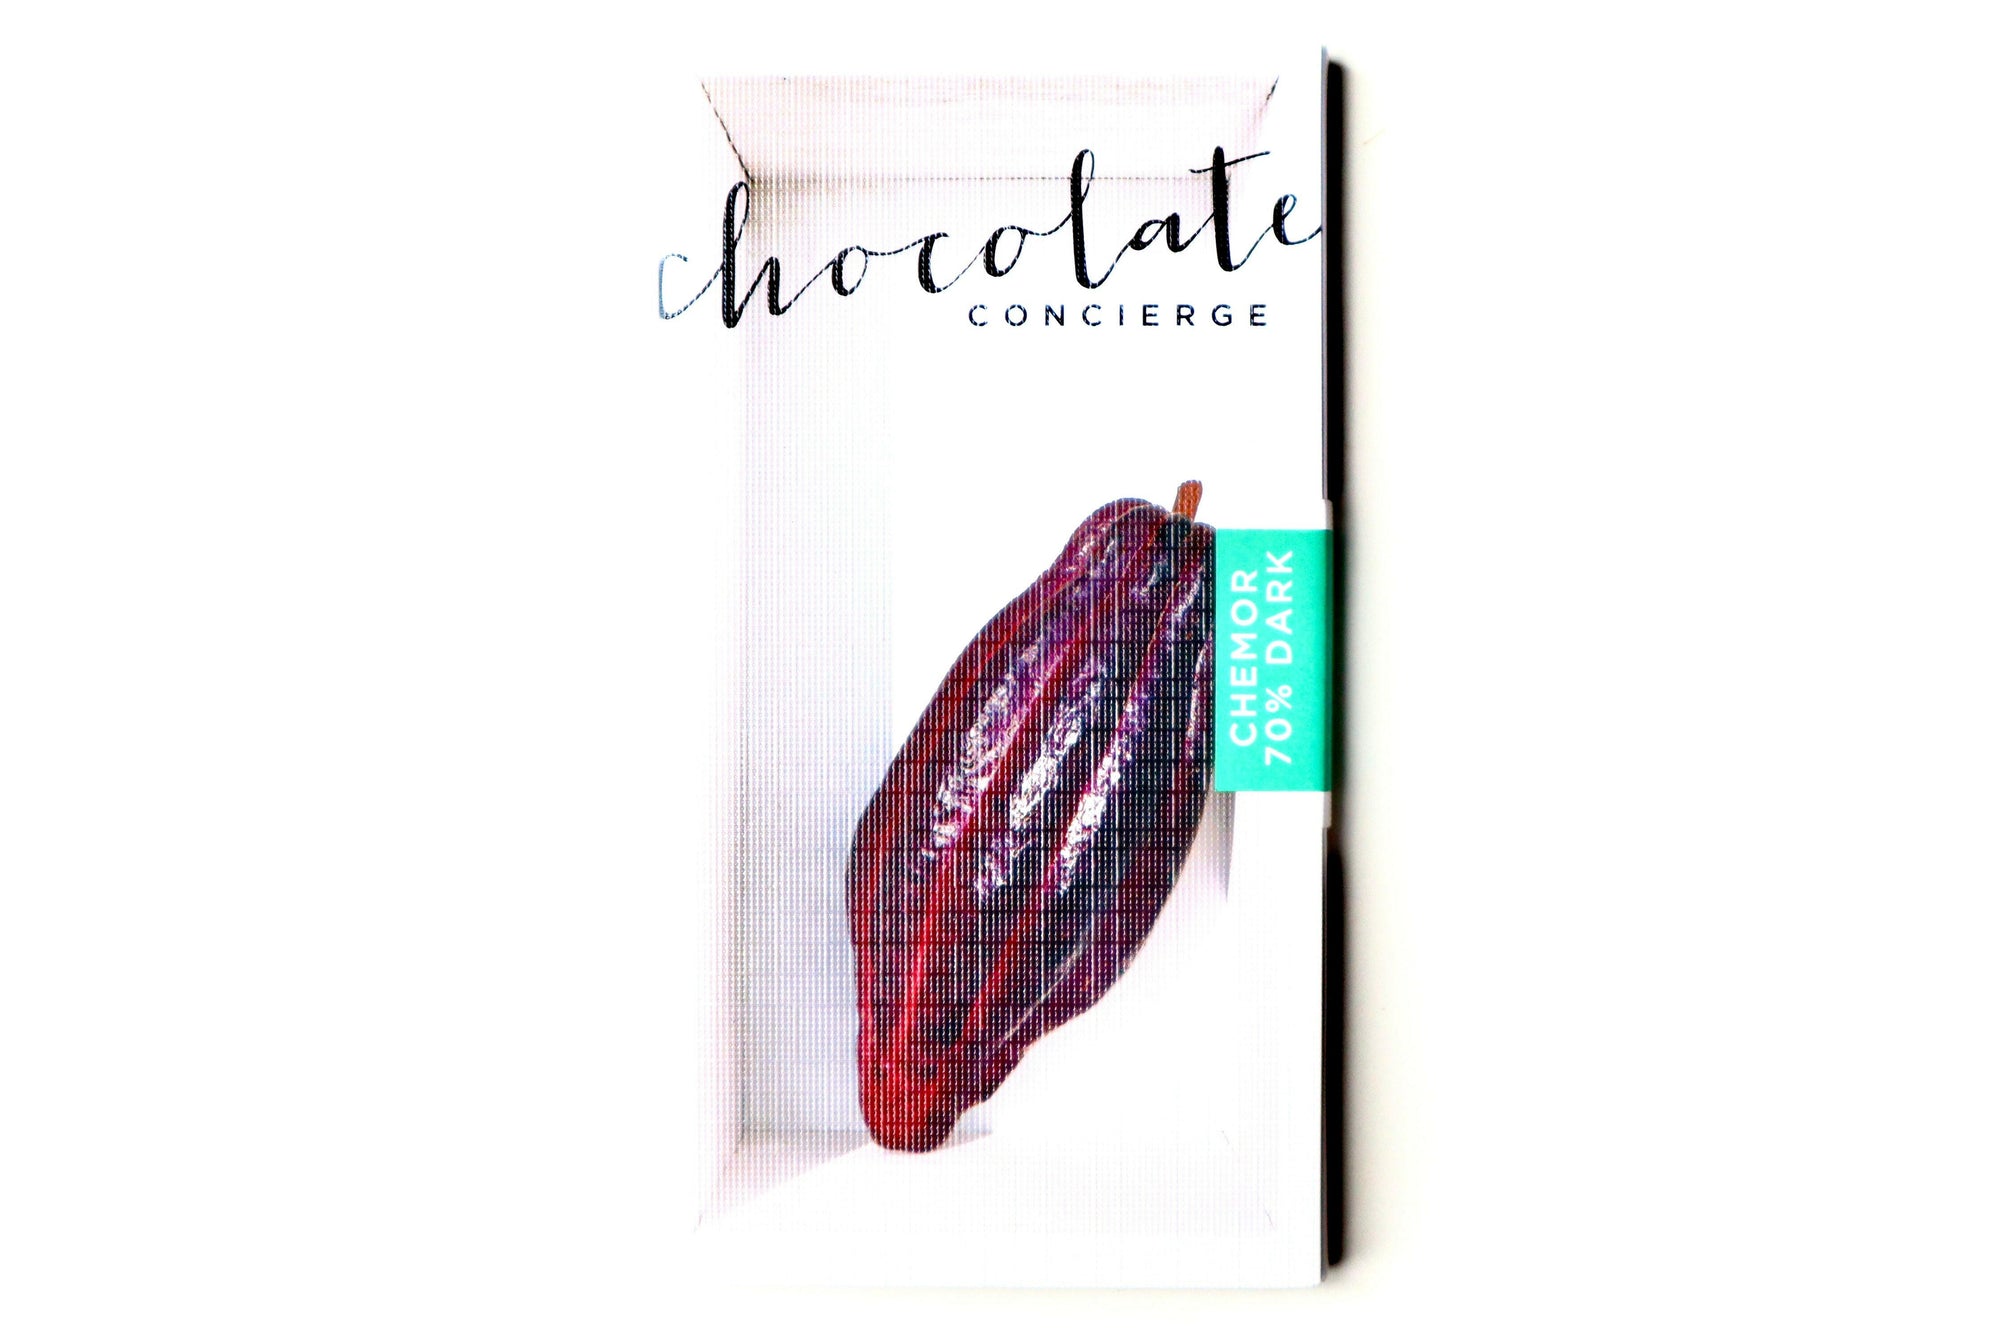 马来西亚霹雳州 Chemor - 70% Banjaran 黑巧克力